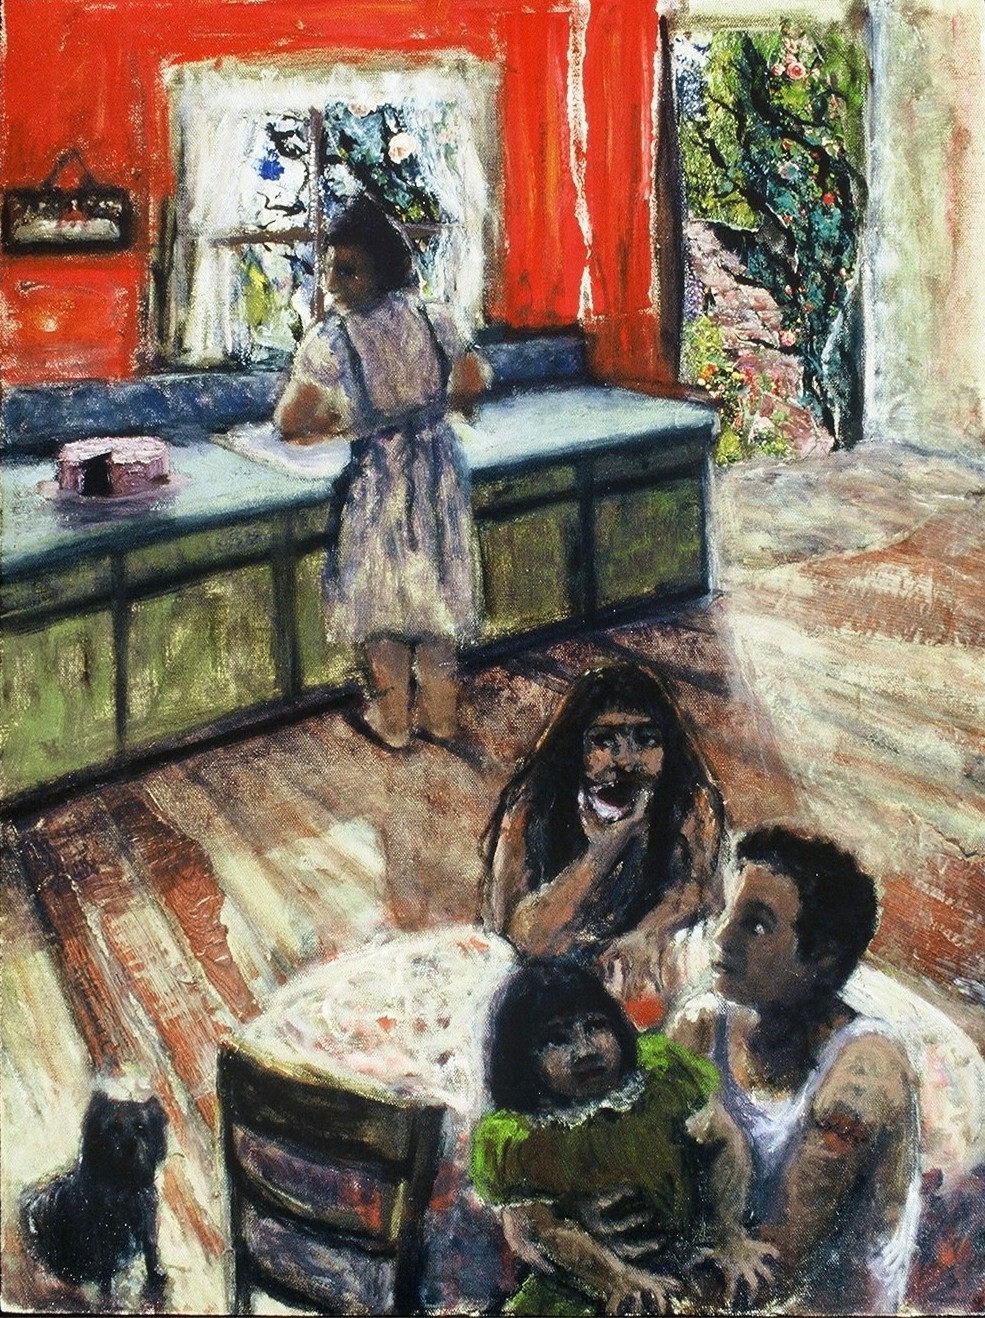 La Familia-Collage & Oil on canvas-24h x 18w in